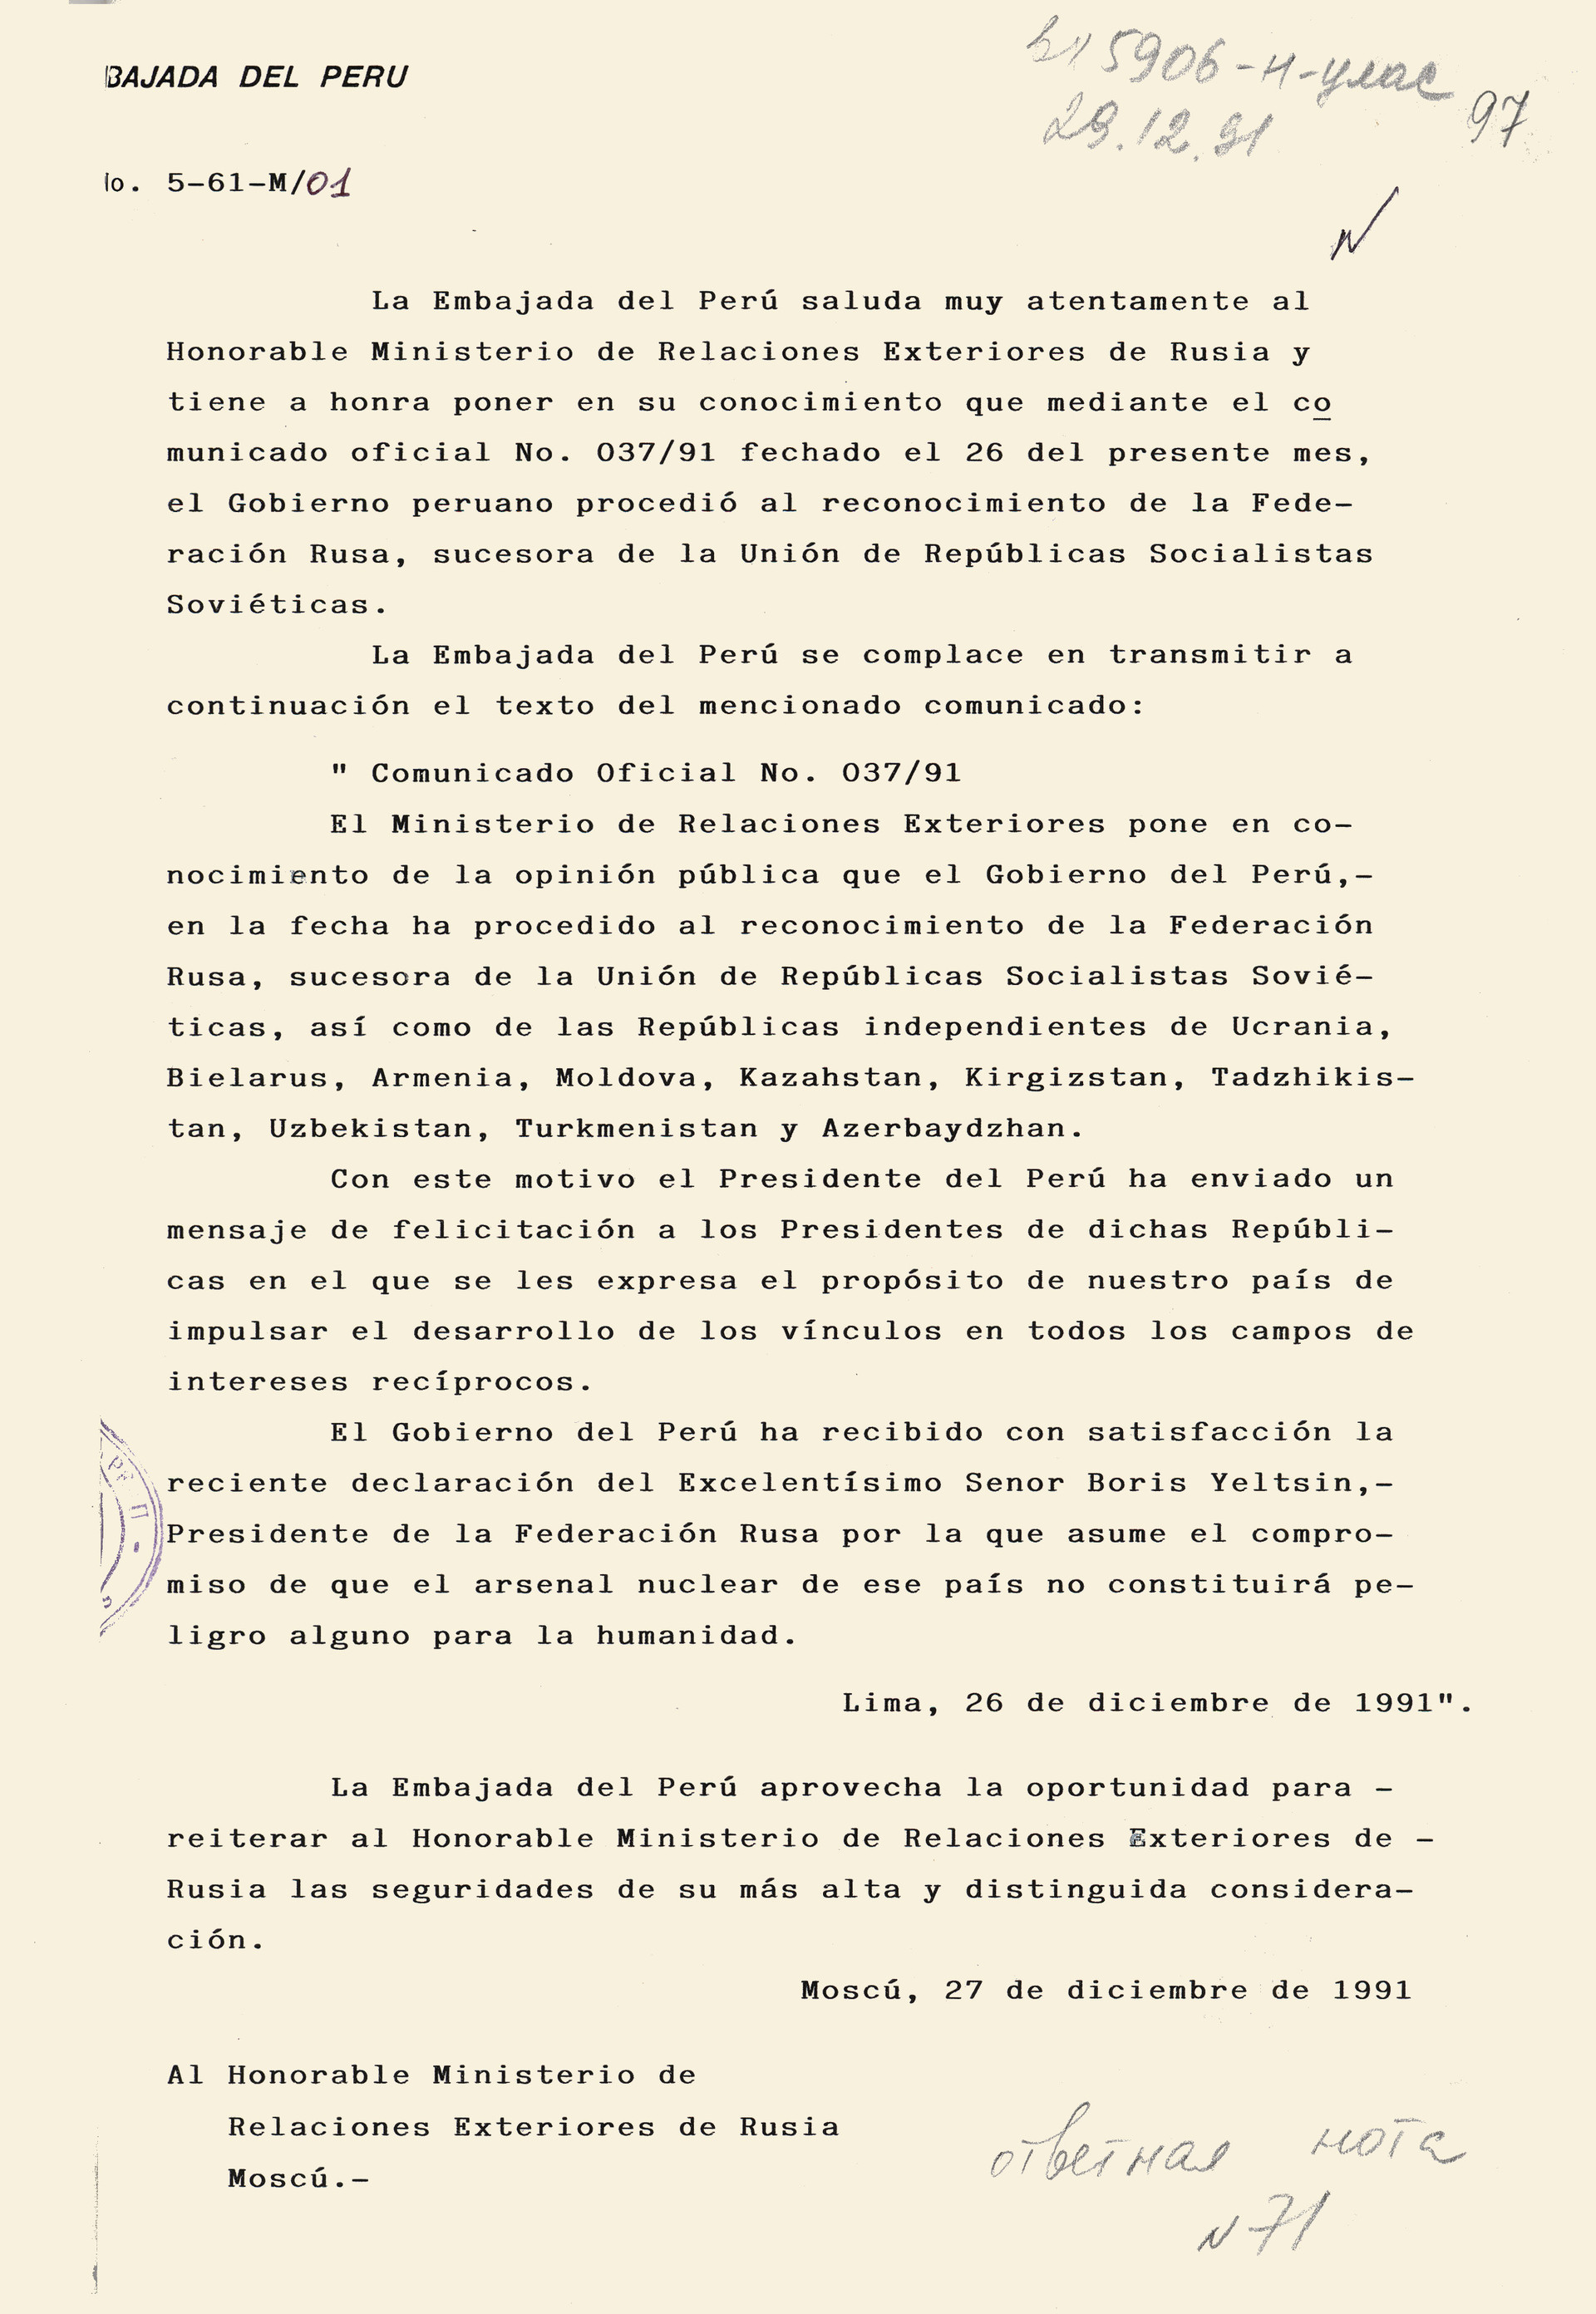 Nota de la Embajada de Perú al Ministerio de Relaciones Exteriores de Rusia comunicando que el Gobierno peruano procedió al reconocimiento de la Federación Rusa como sucesora de la URSS. 26 de diciembre de 1991.